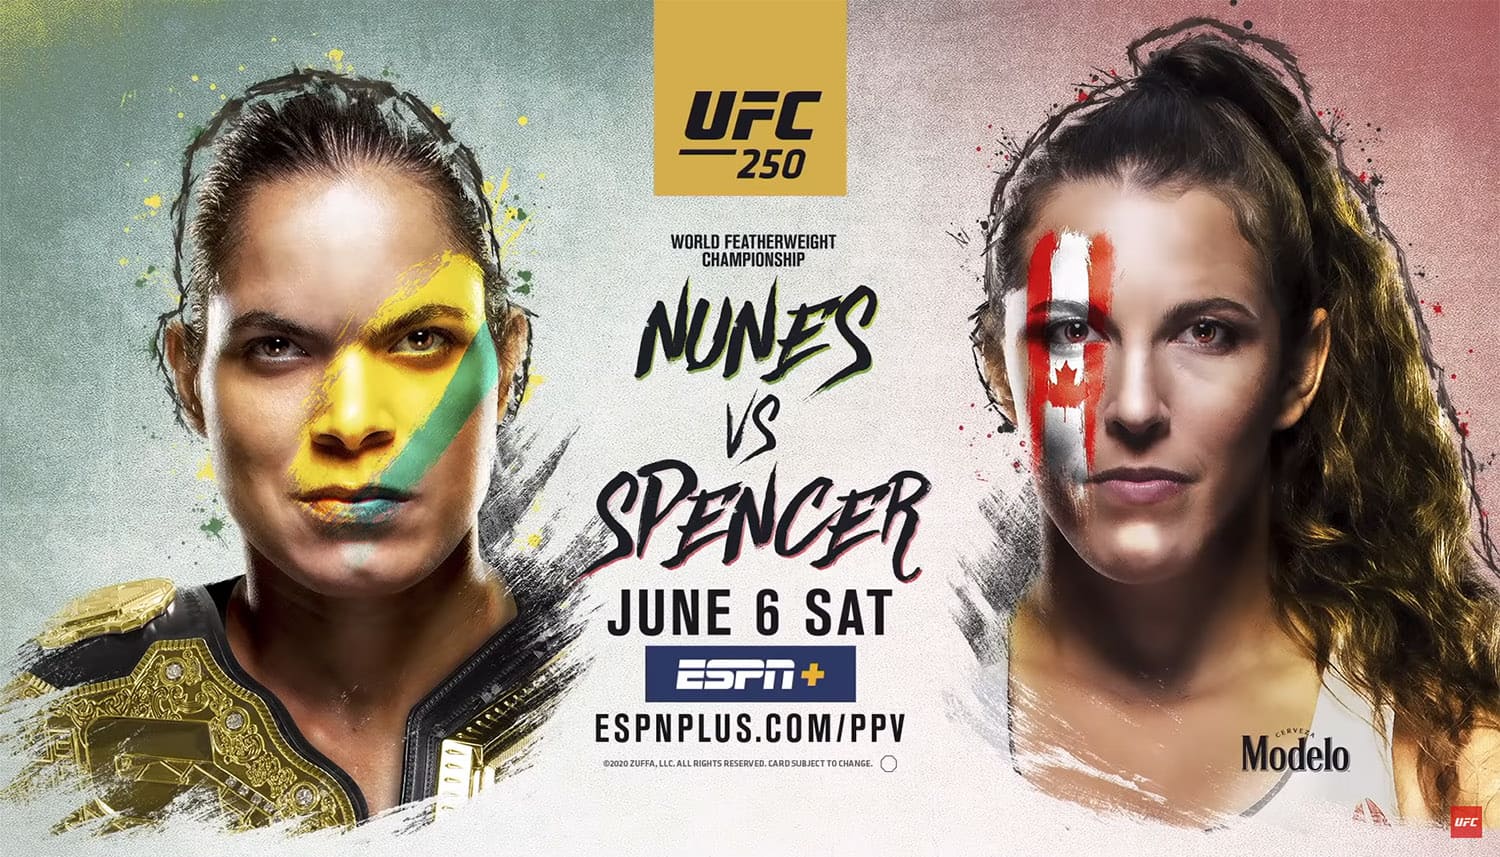 UFC 250: Нунес - Спенсер дата проведения, кард, участники и результаты